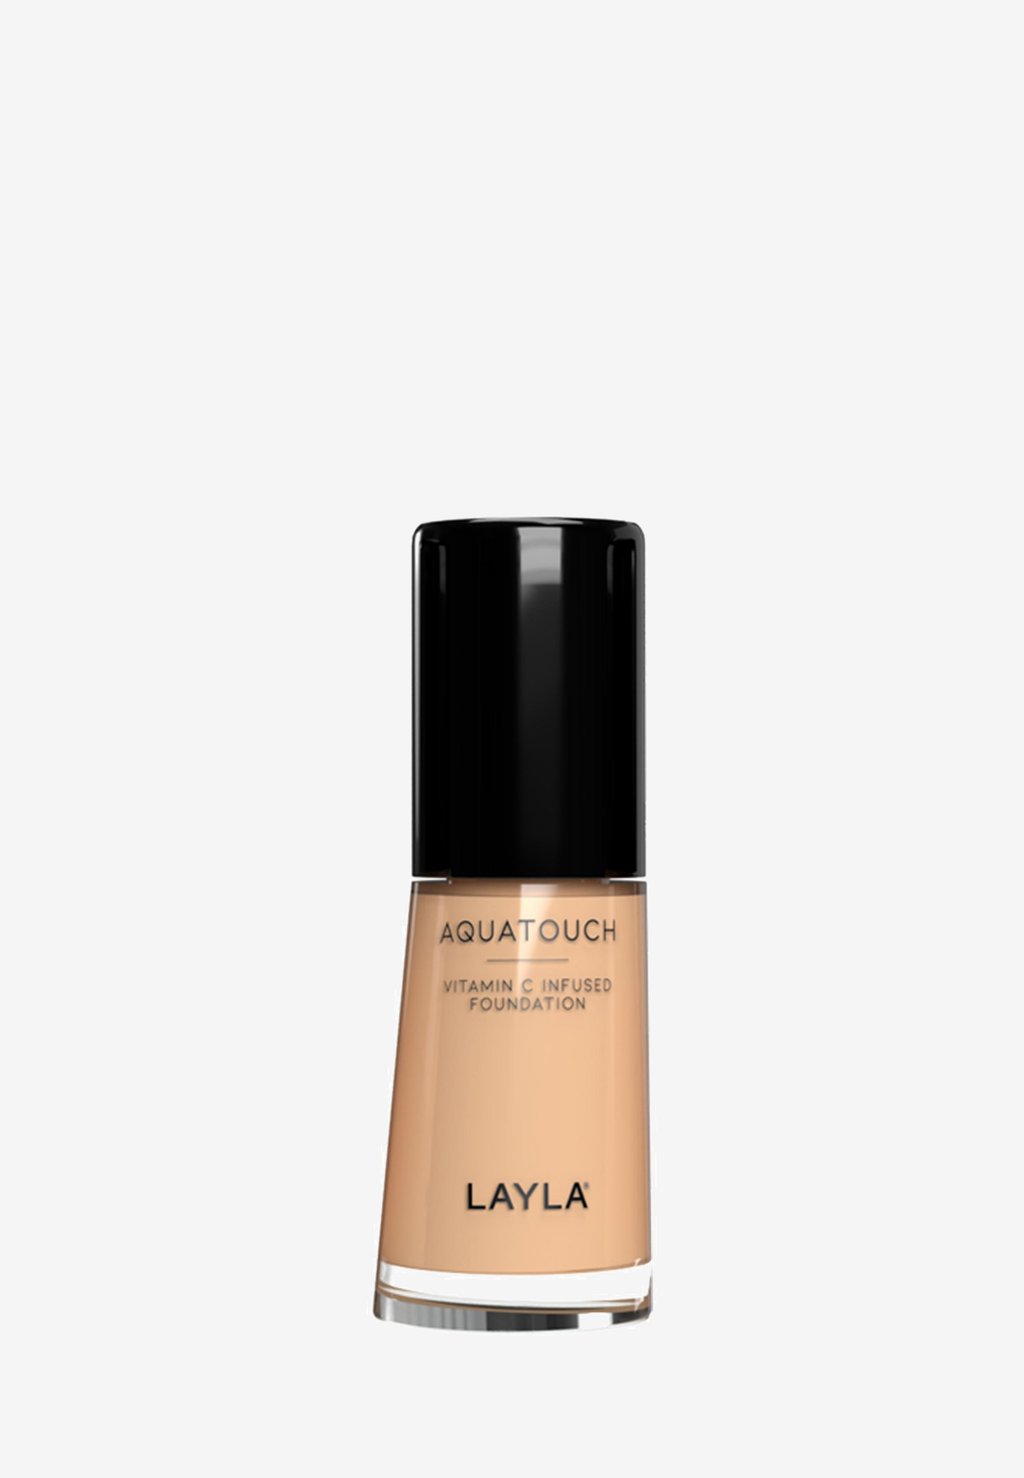 Тональная основа AQUATOUCH FOUNDATION Layla Cosmetics, цвет 4 увлажняющая тональная основа layla cosmetics aquatouch foundation 30 мл